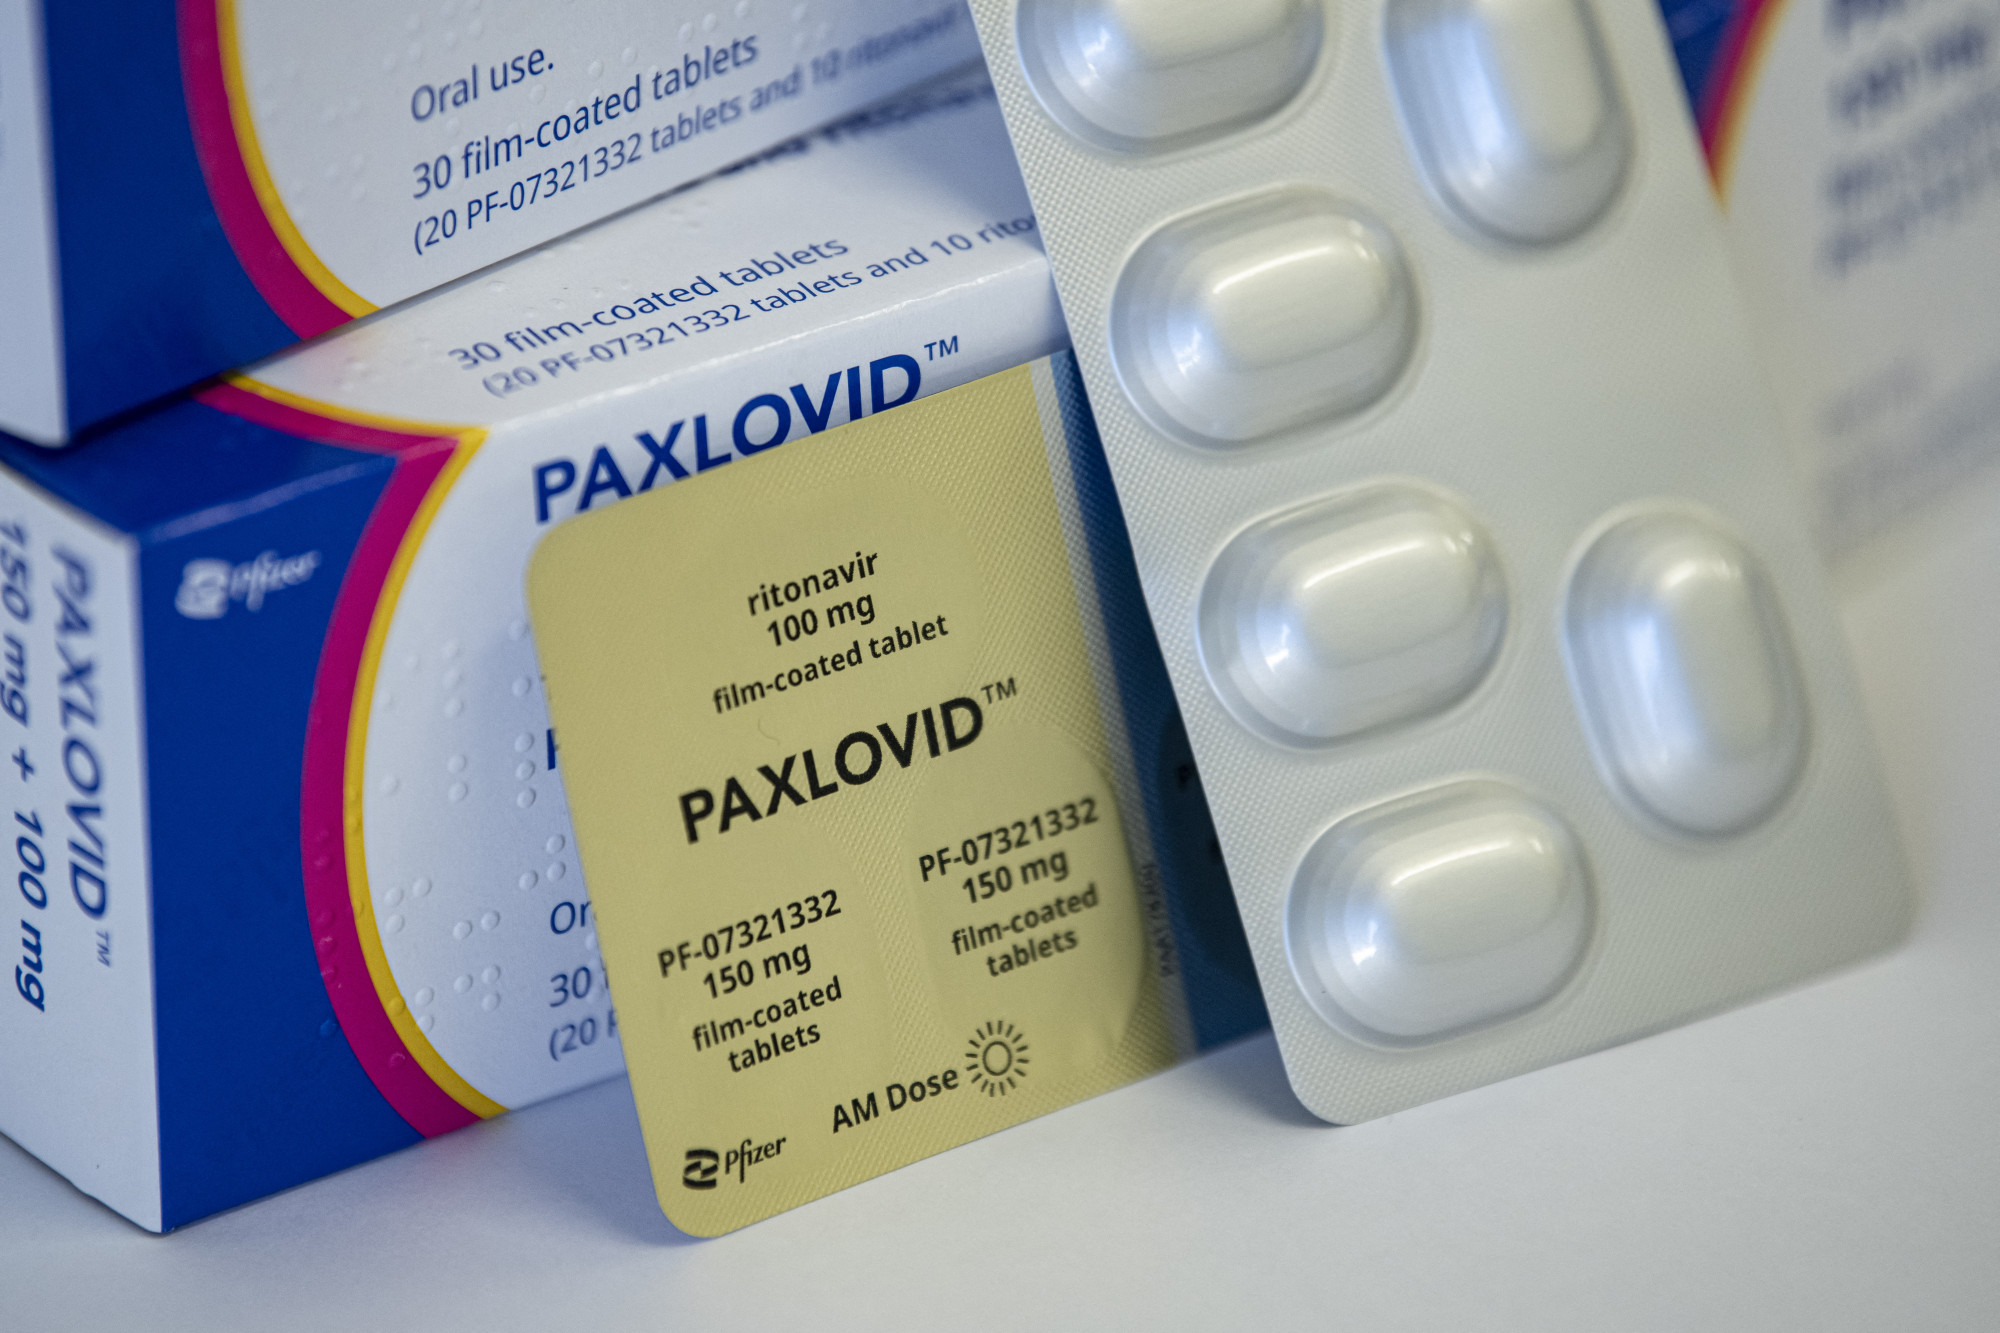 Kína mielőbb gyártani szeretné a Pfizer covid elleni tablettáját